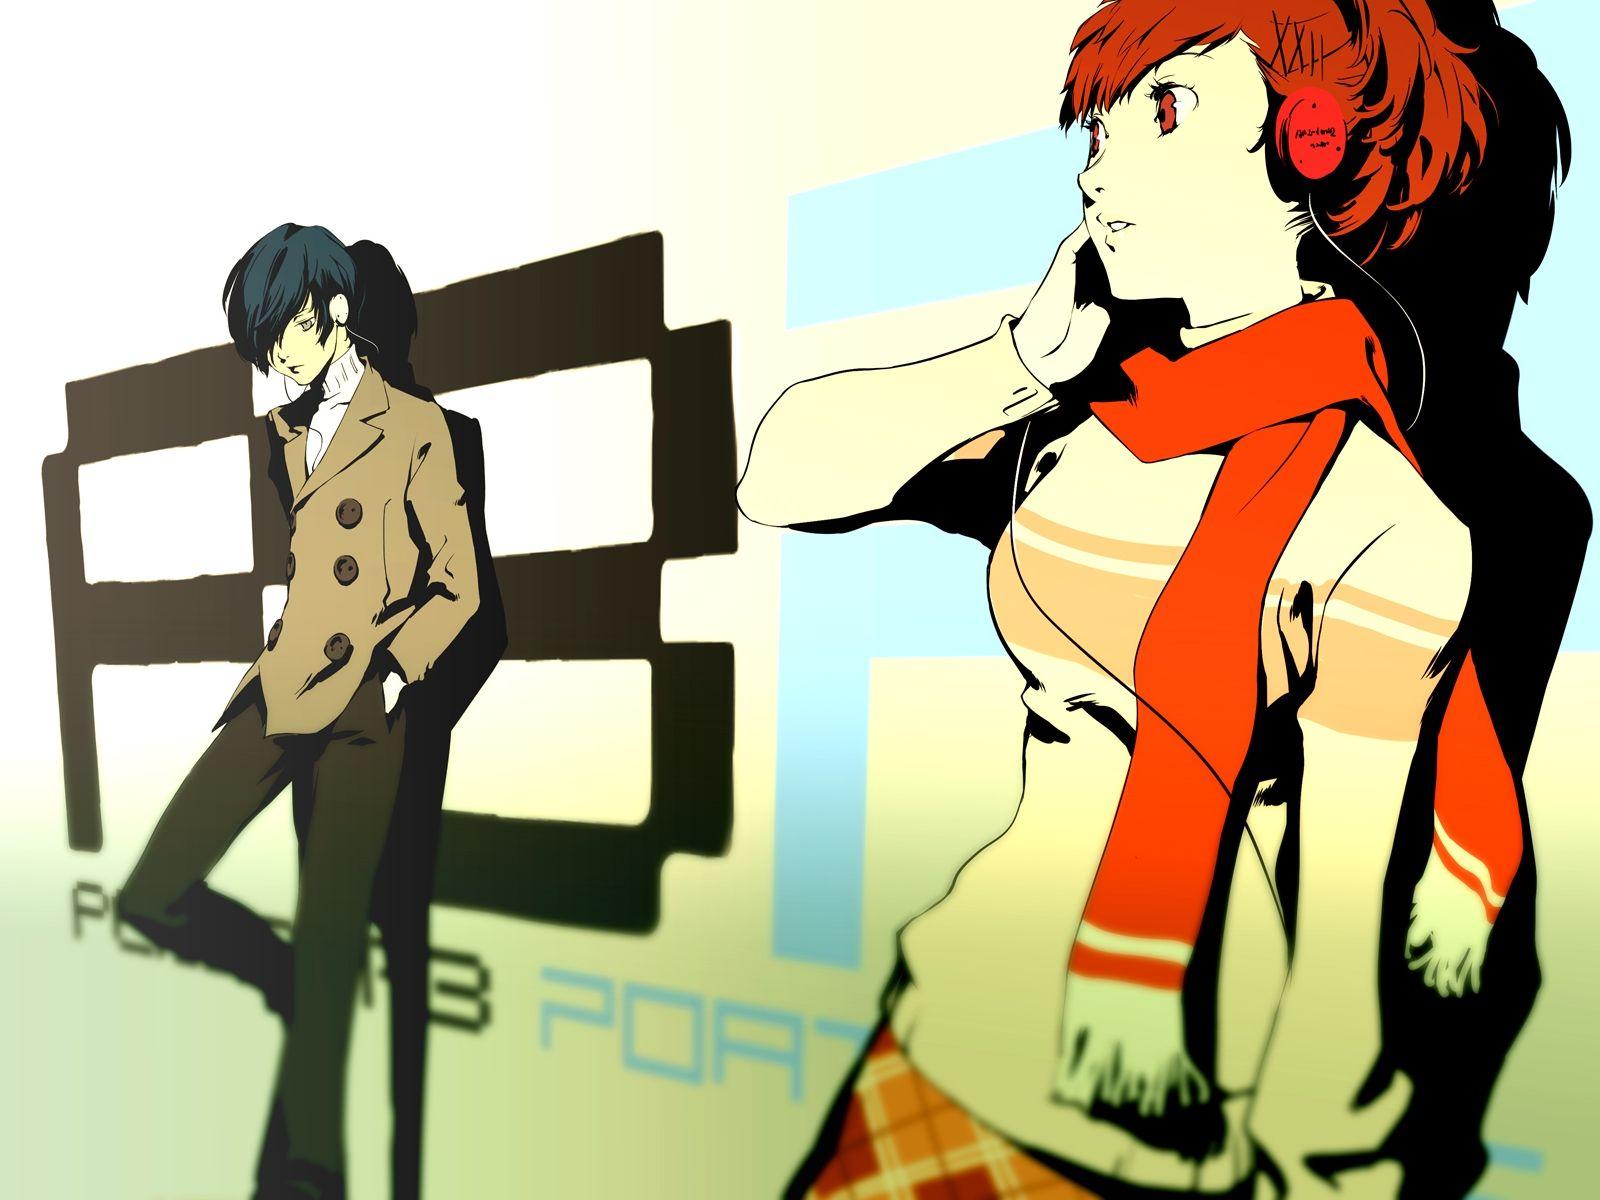 Video Game Persona 3 Wallpaper. Anm cmc. Persona